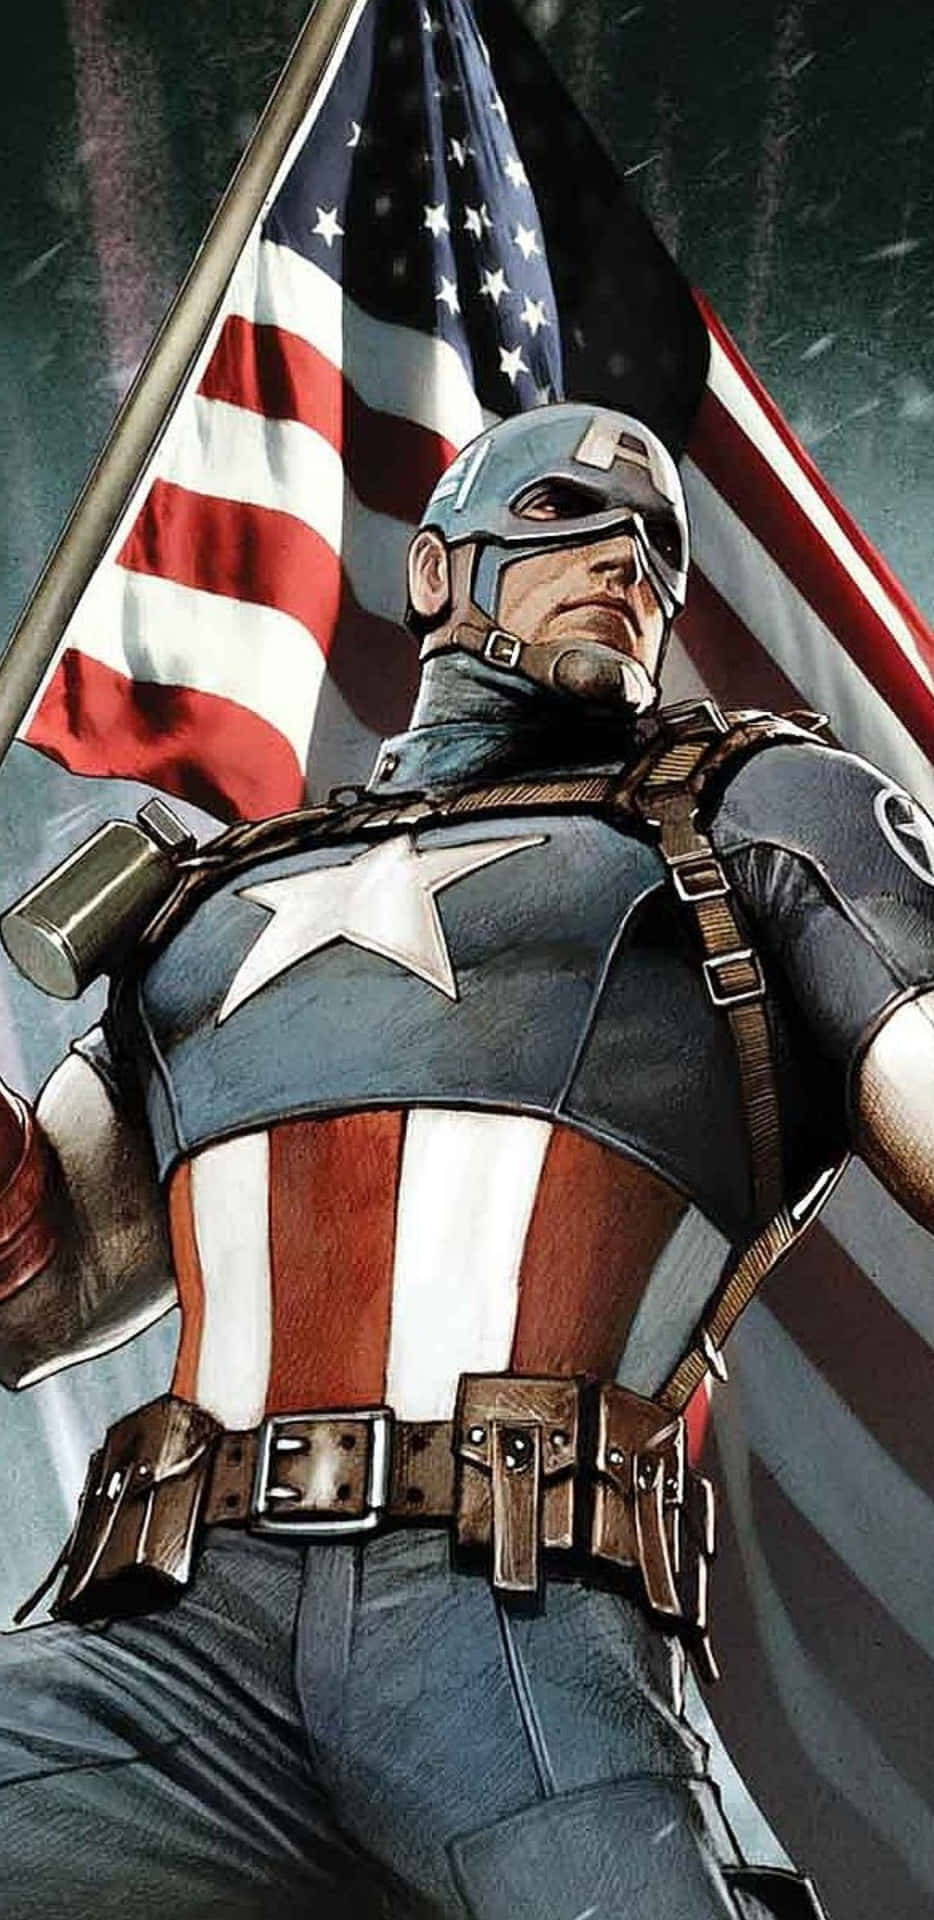 Fondode Pantalla De Pixel 3xl: Capitán América - Cómic